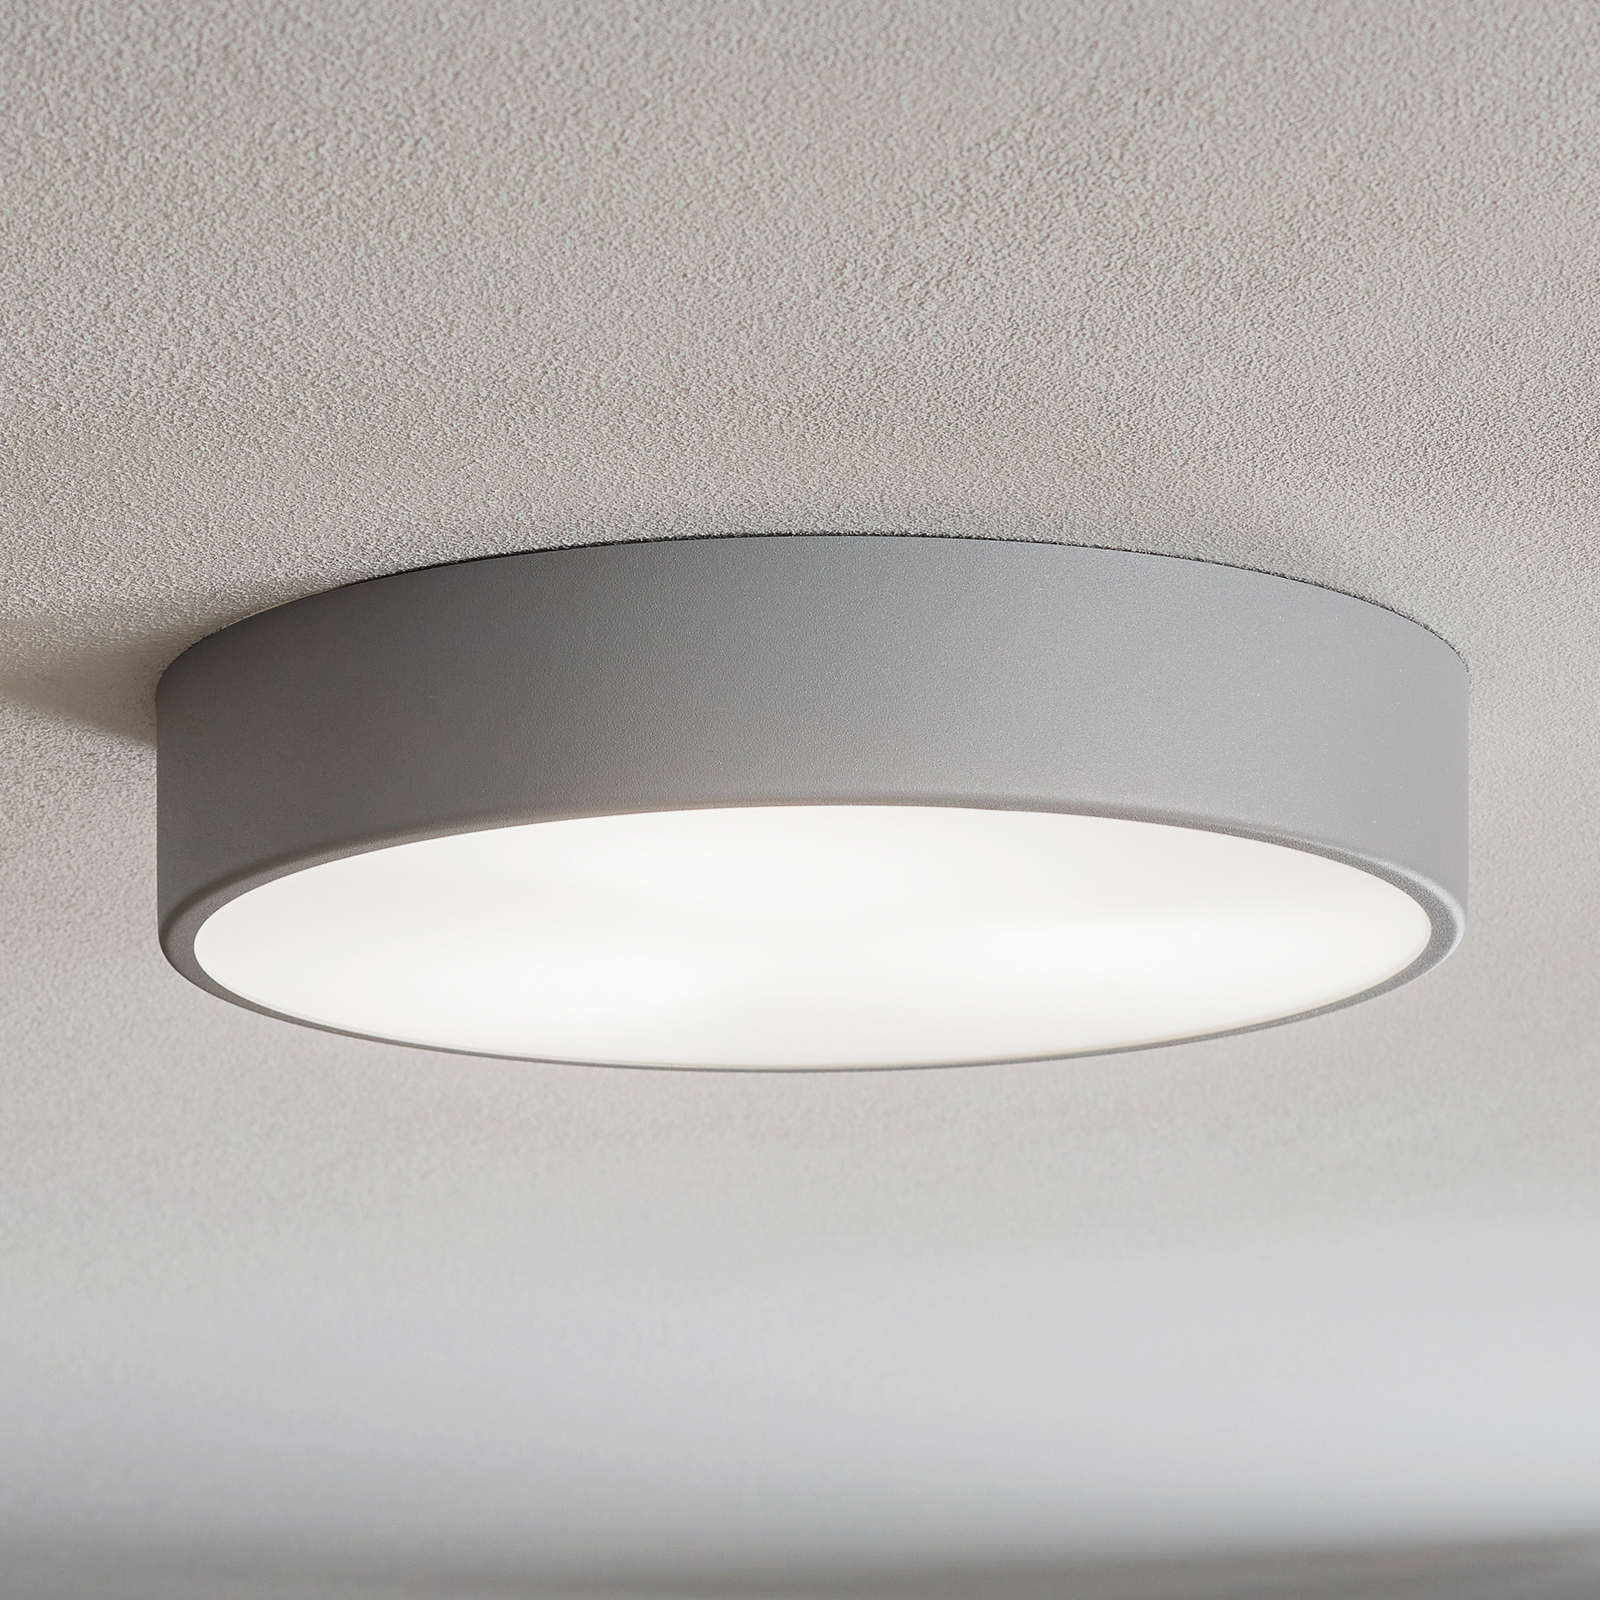 Cleo 400 ceiling light, sensor, Ø 40 cm grey